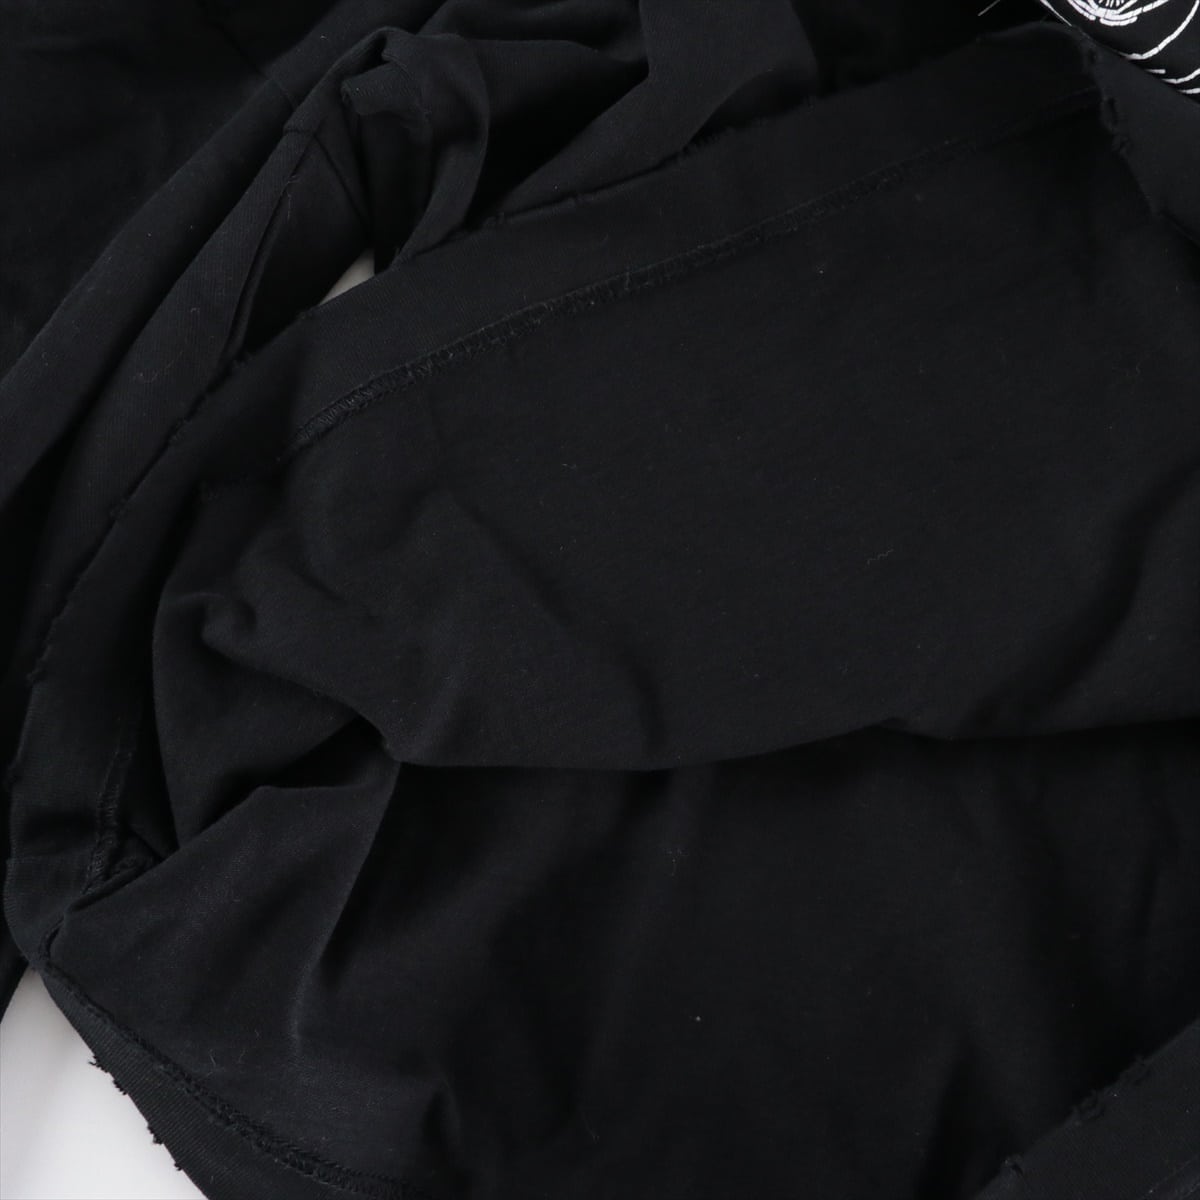 バレンシアガ 20AW コットン ロングTシャツ XS メンズ ブラック  モックネック ダメージ加工